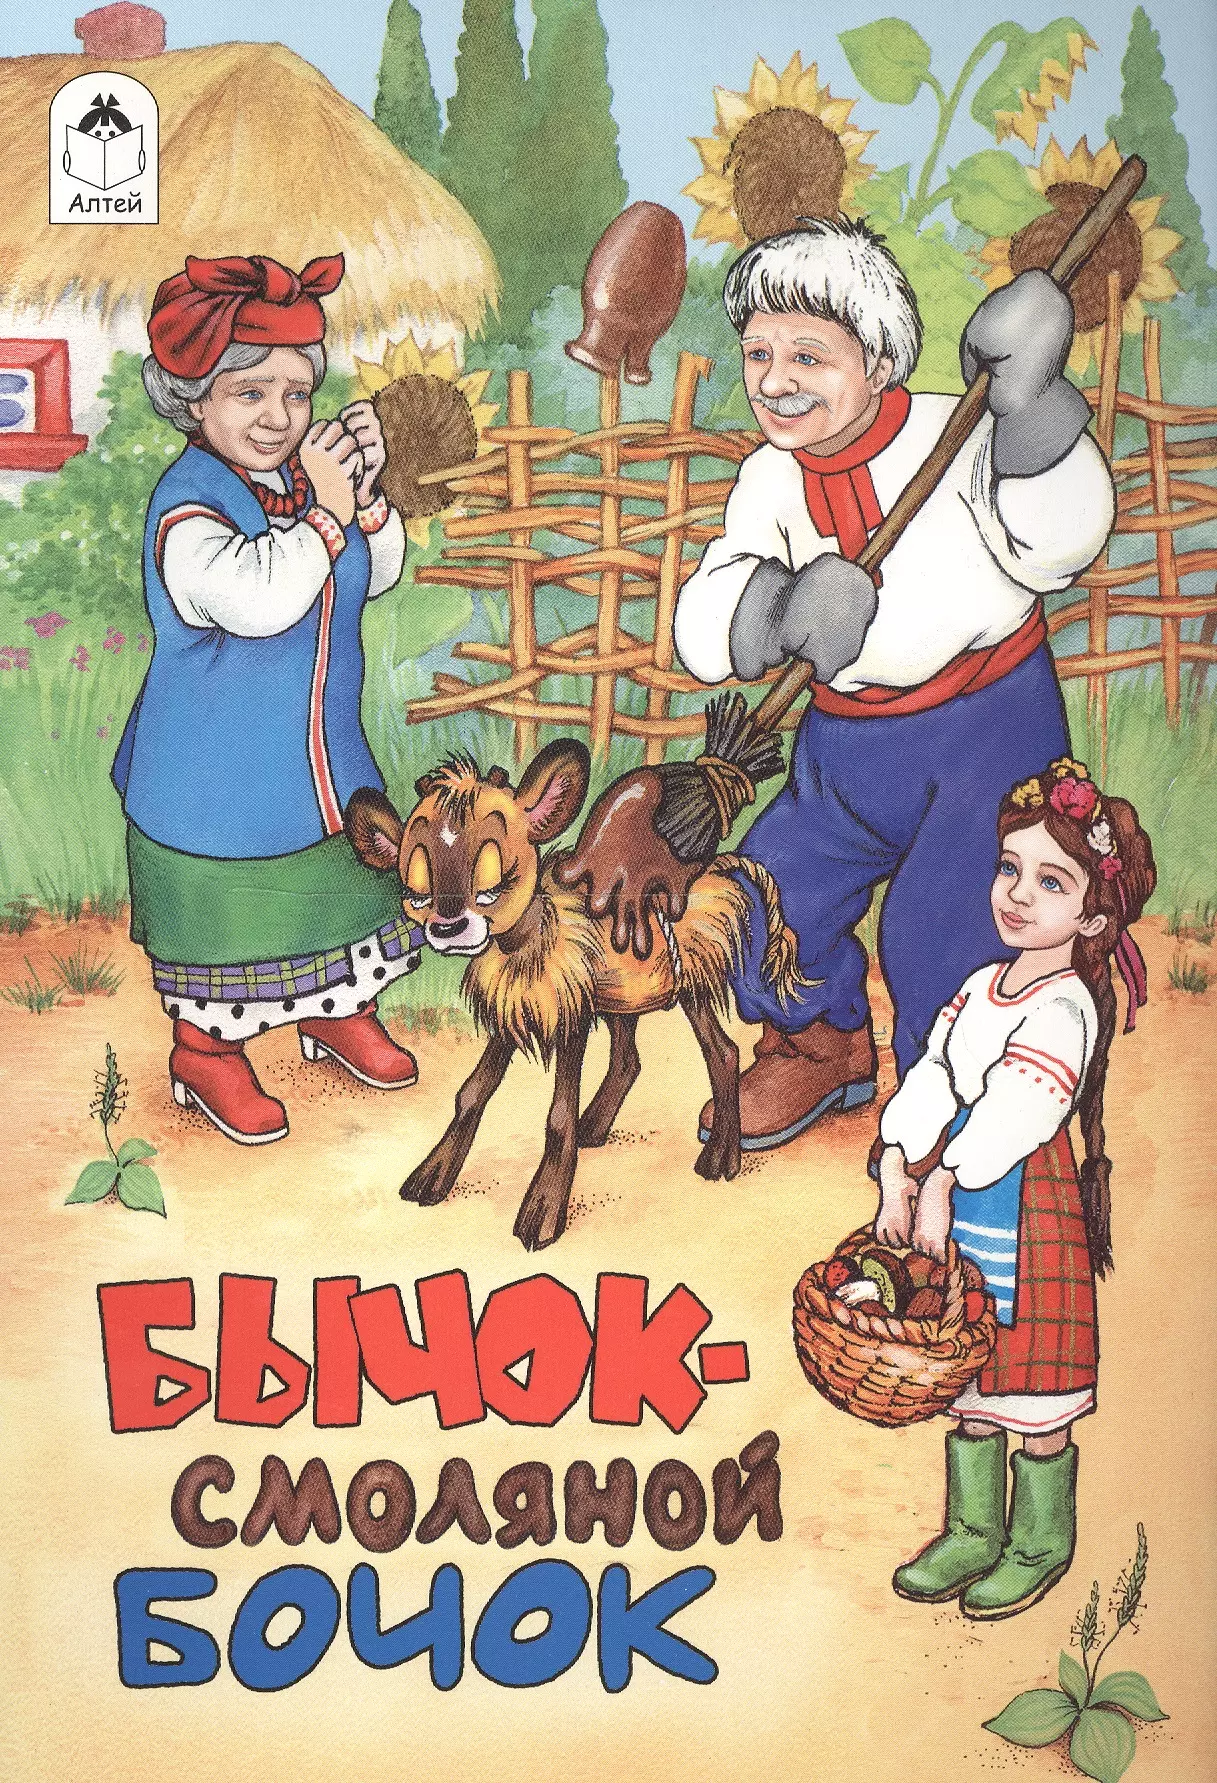 Русские народные сказки смоляной бычок